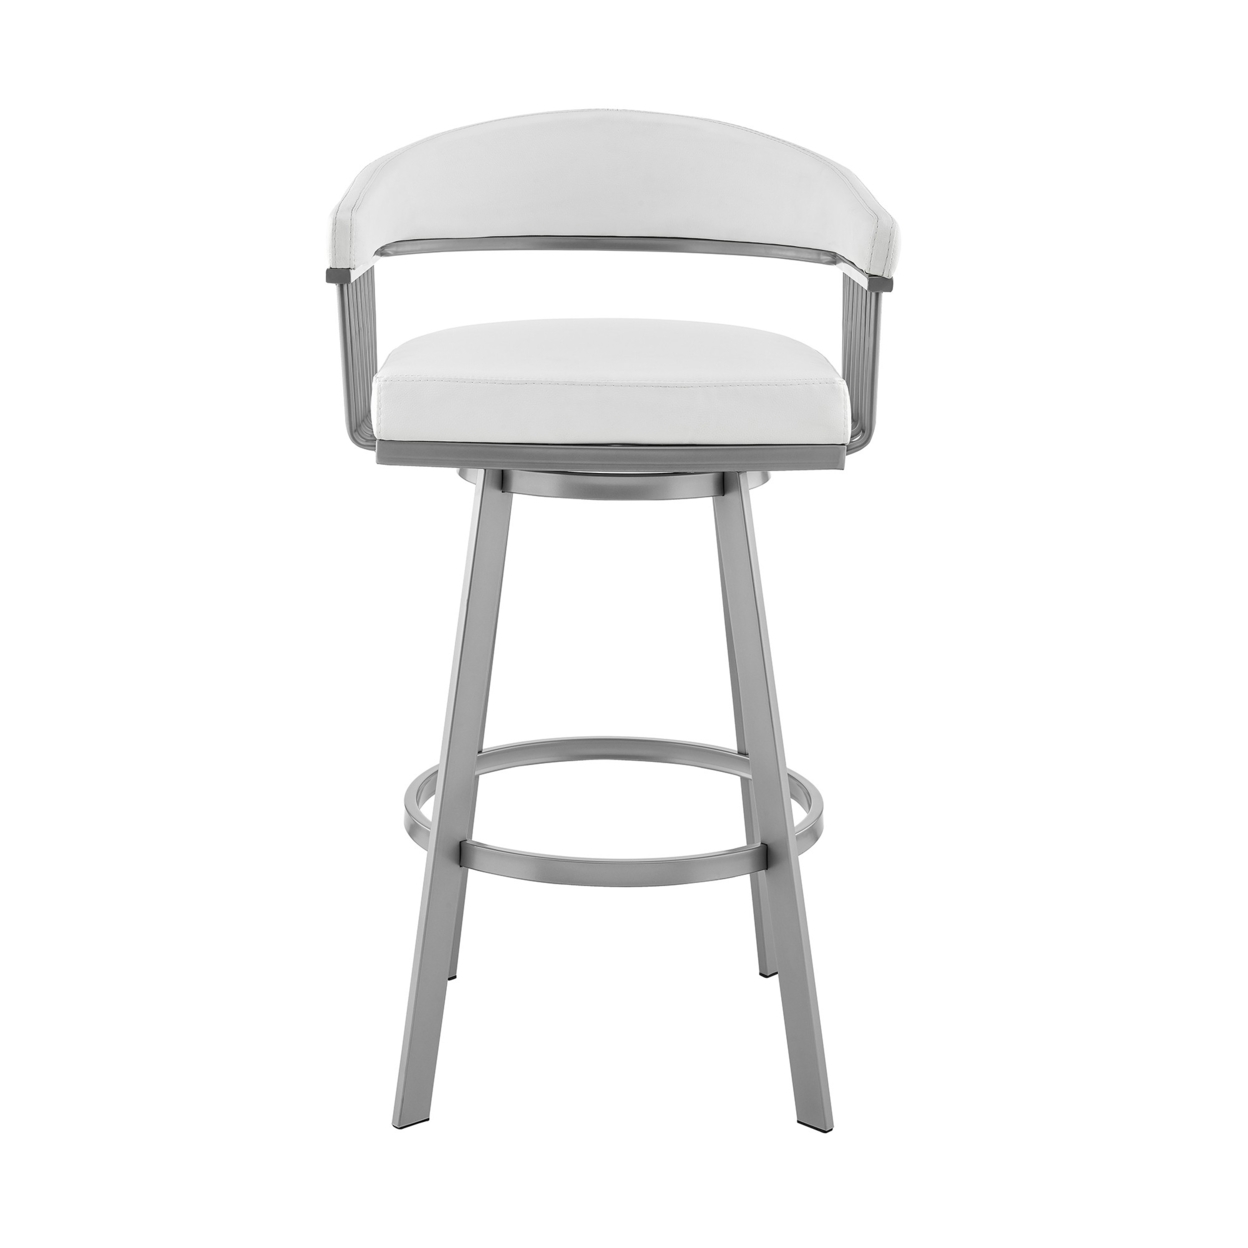 Oliver 29 Inch Modern Bar Stool Chair, Vegan Leather, Slats, Swivel, White- Saltoro Sherpi